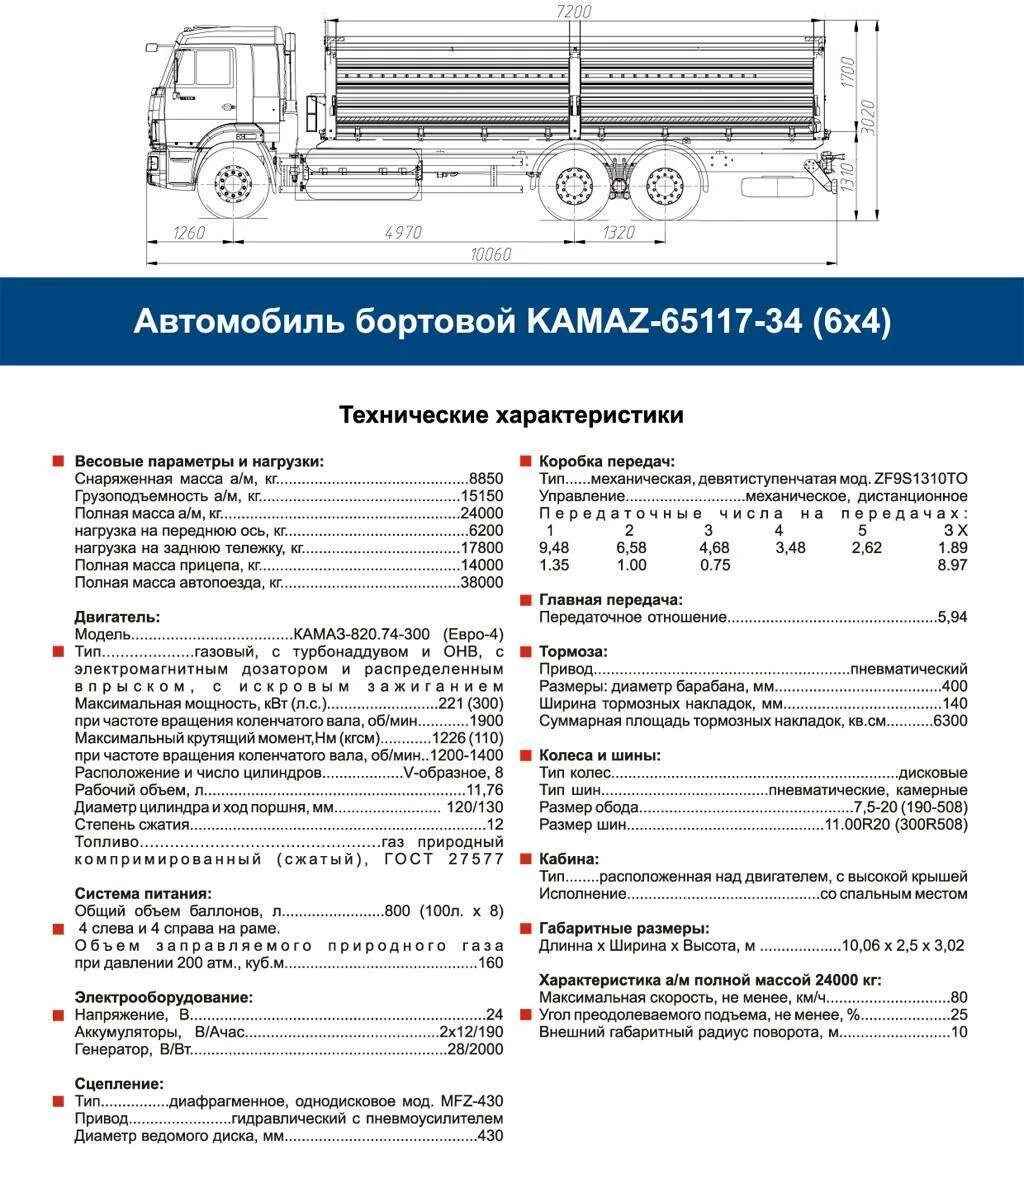 Полные данные на автомобиль. КАМАЗ 65115 бортовой нагрузка на ось. Габариты кузова КАМАЗ 65117 бортовой. КАМАЗ 5320 бортовой технические характеристики грузоподъемность. Габариты КАМАЗ 65115 бортовой.